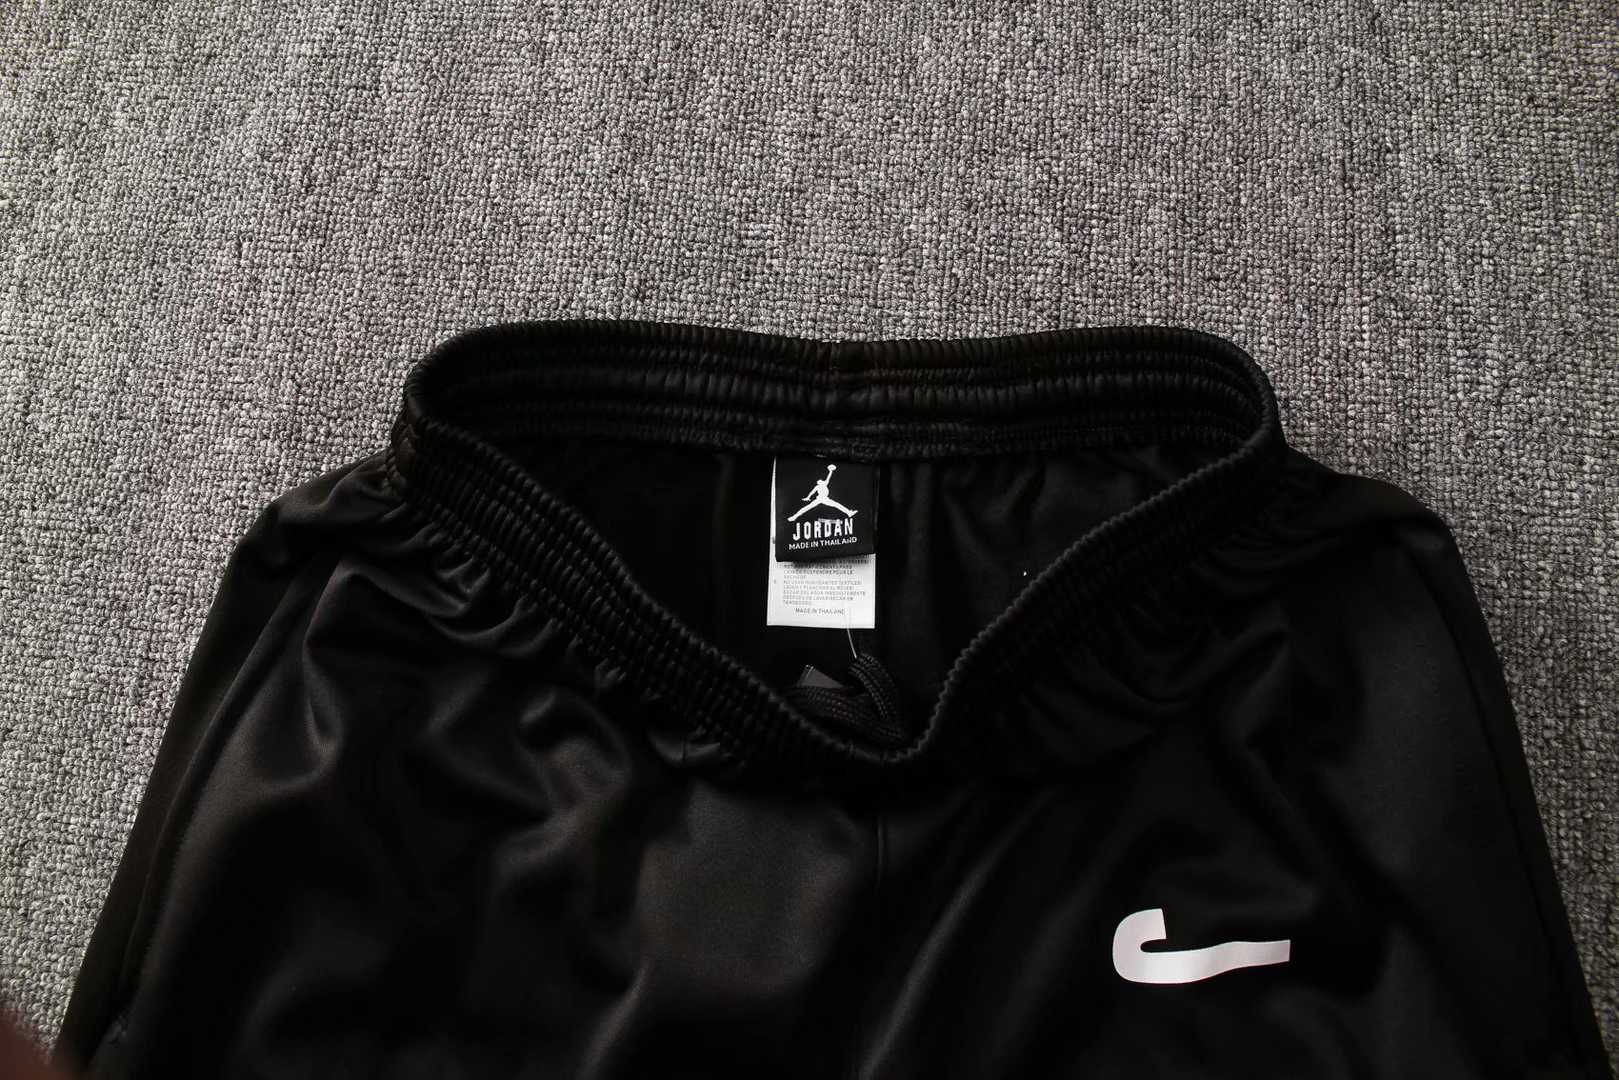 2019/20 Jordan Hoodie Black Mens Soccer Training Suit(Jacket + Pants)